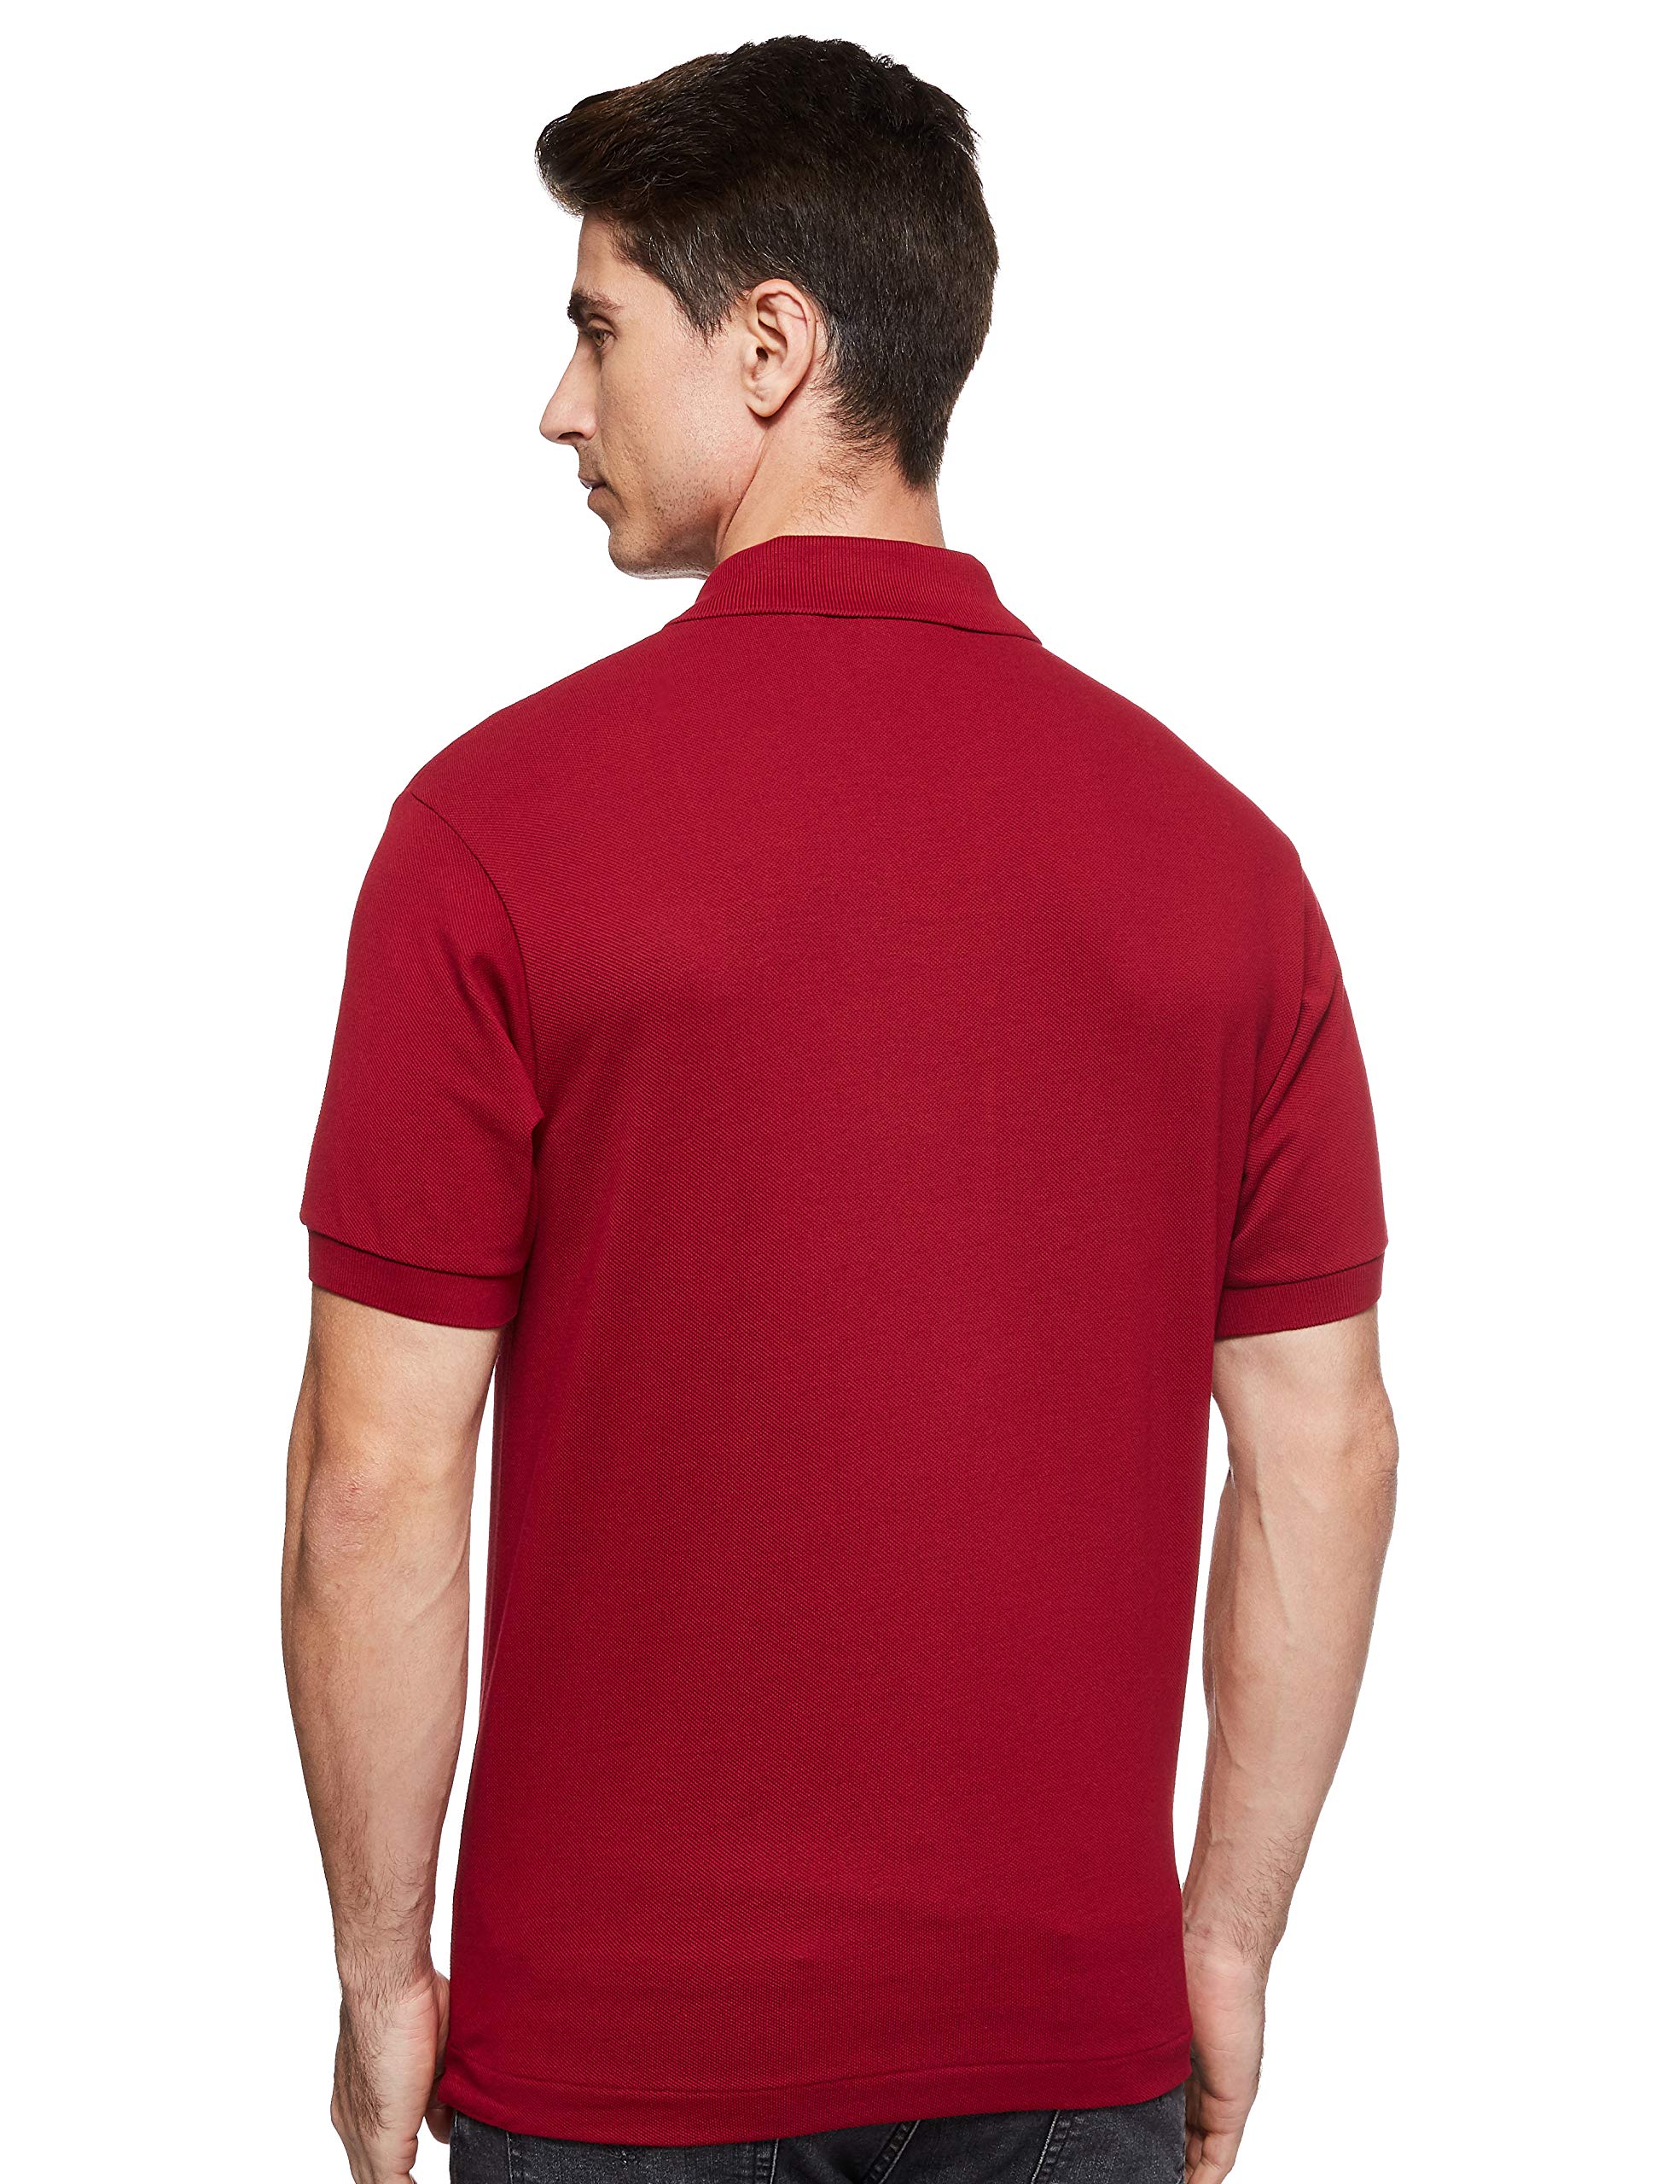 Lacoste Men's Classic Short Sleeve Piqué L.12.12 Polo Shirt